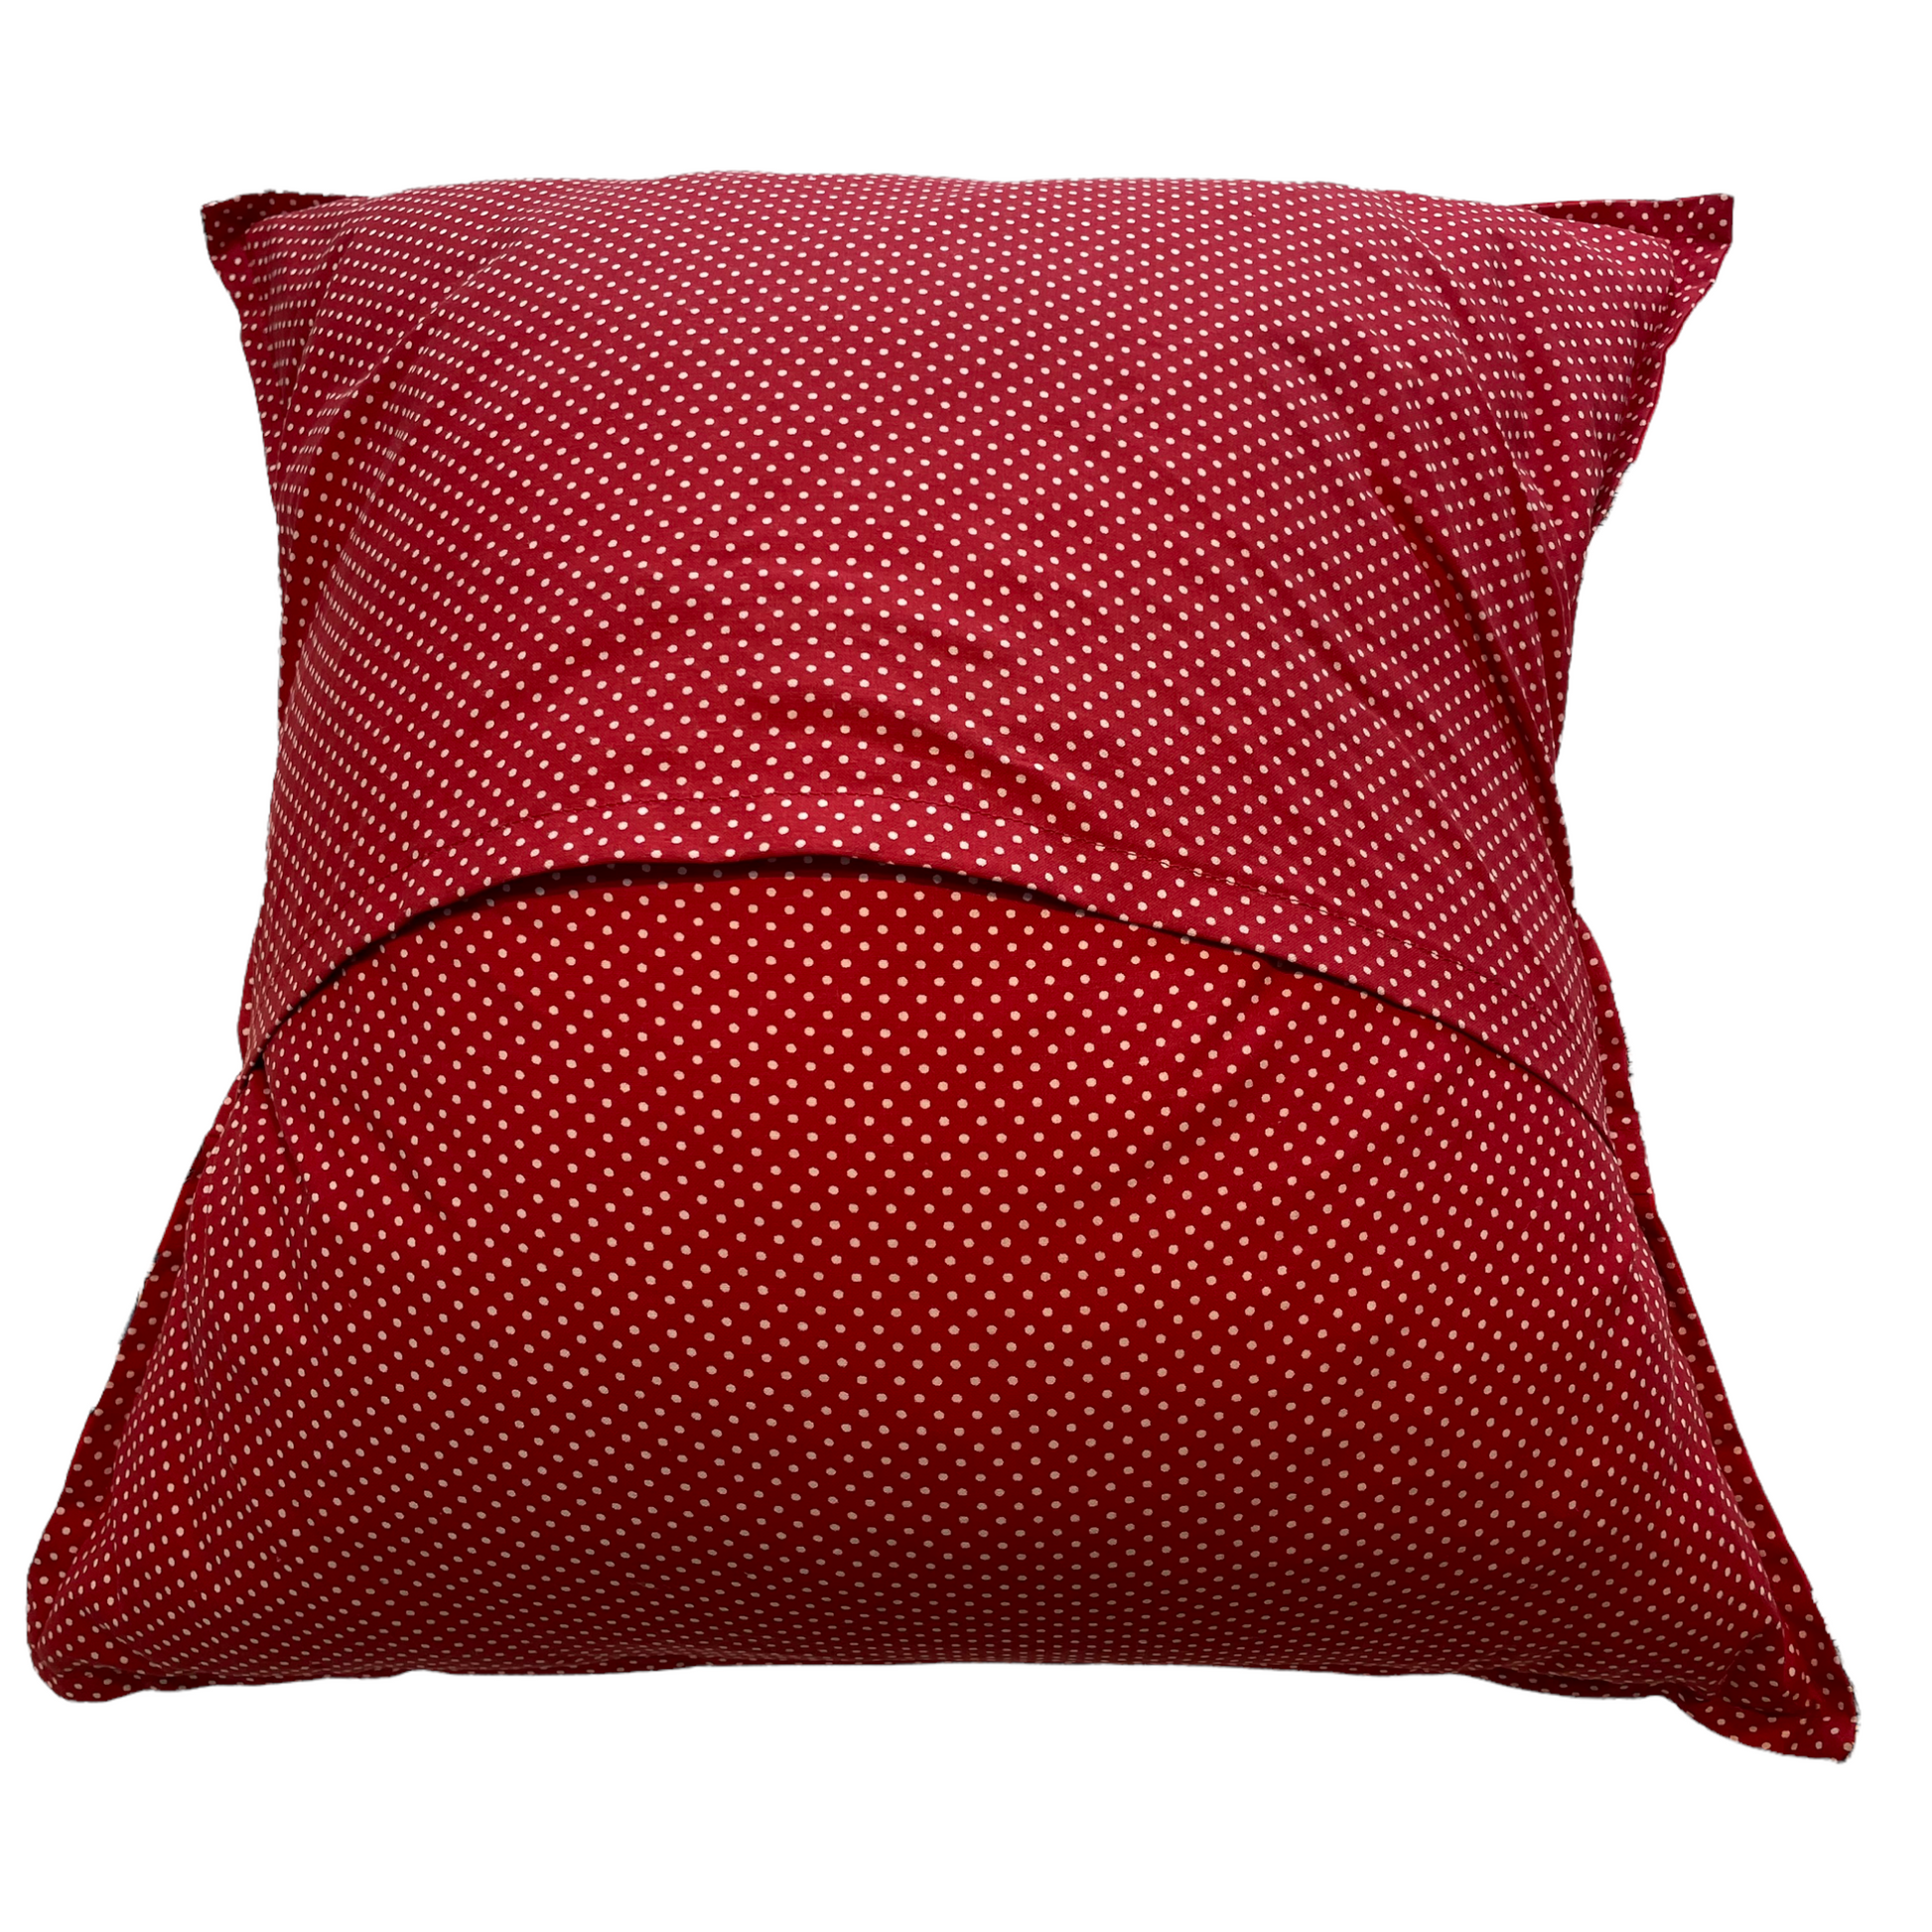 Red Camping Pillow. Retro Camper Pillow. RV Decor. Glamper Decor Ideas - Home Stitchery Decor